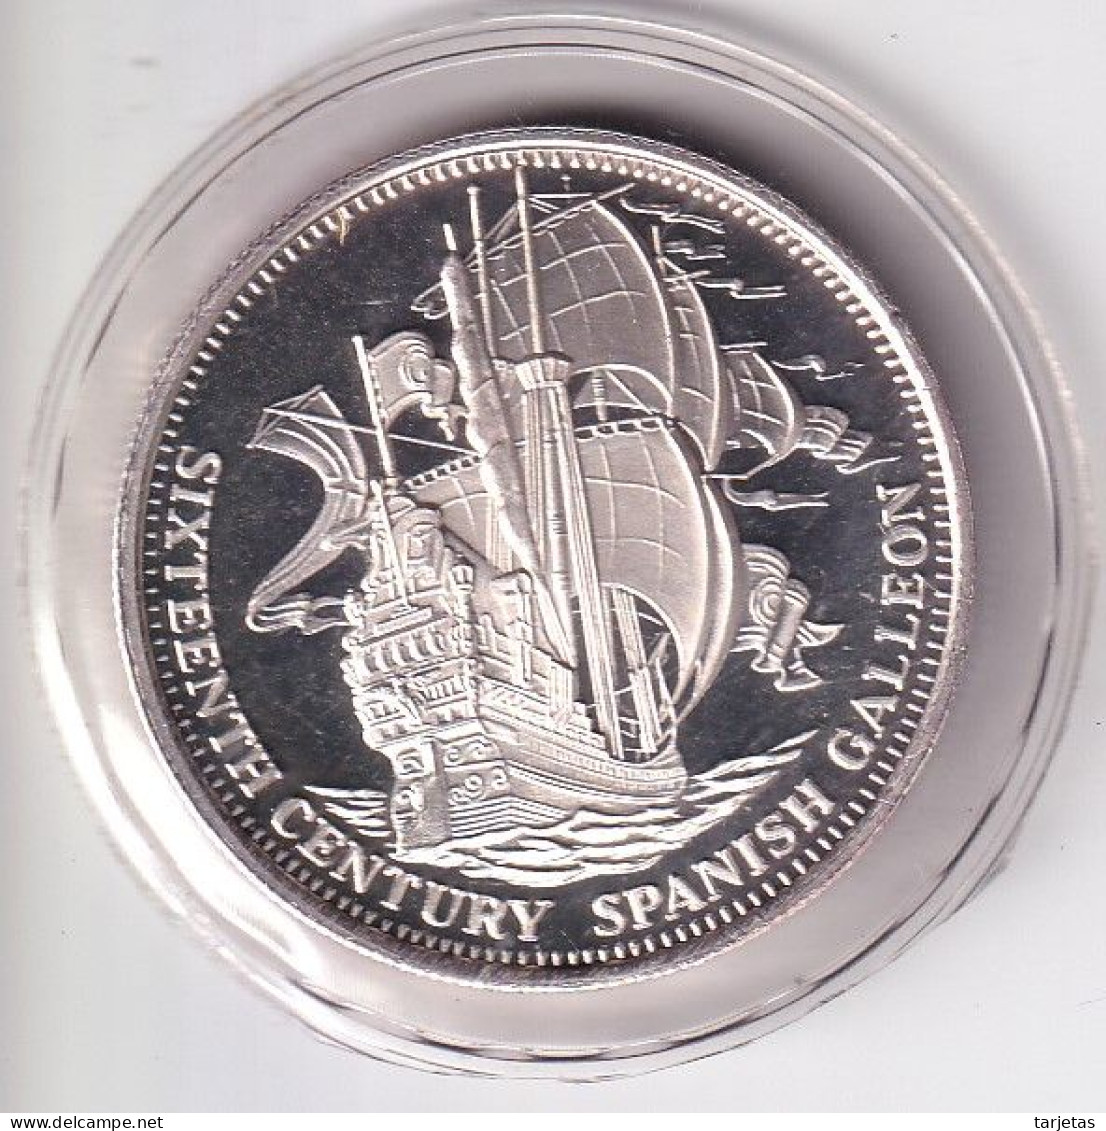 MONEDA DE PLATA DE ESTADOS UNIDOS DE 1 ONZA DE SIXTEENTH VENTURY SPANISH CALLEON (BARCO-SHIP) - Commemorative